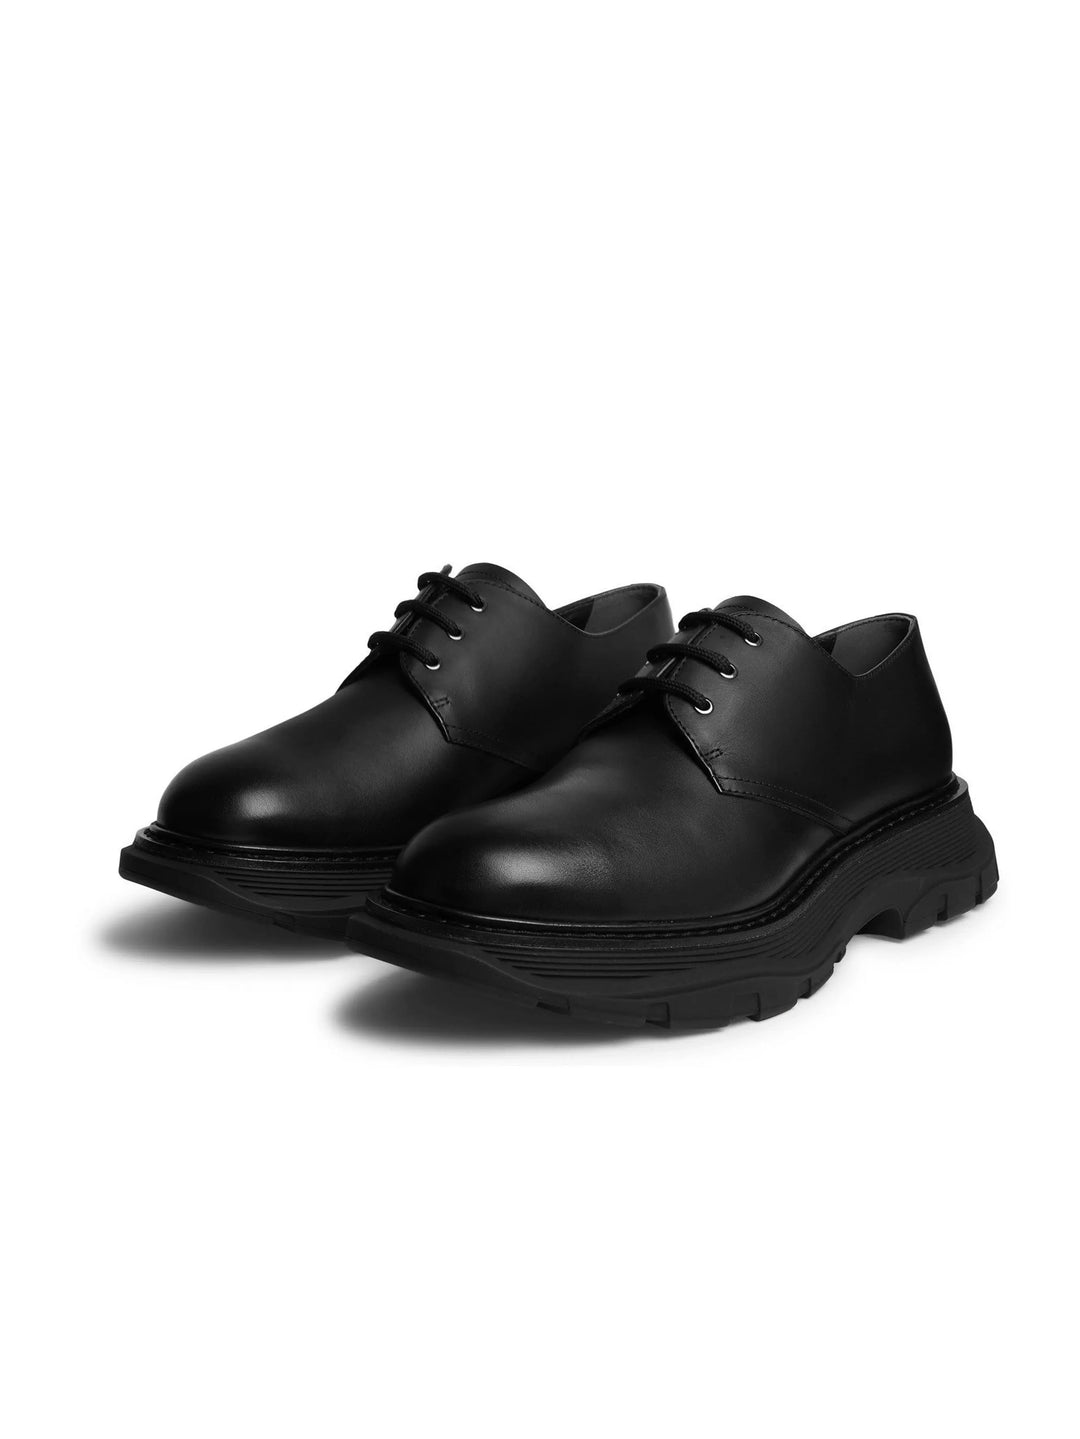 Alexander McQueen Tread Shoe Black in Auckland, New Zealand - Shop name